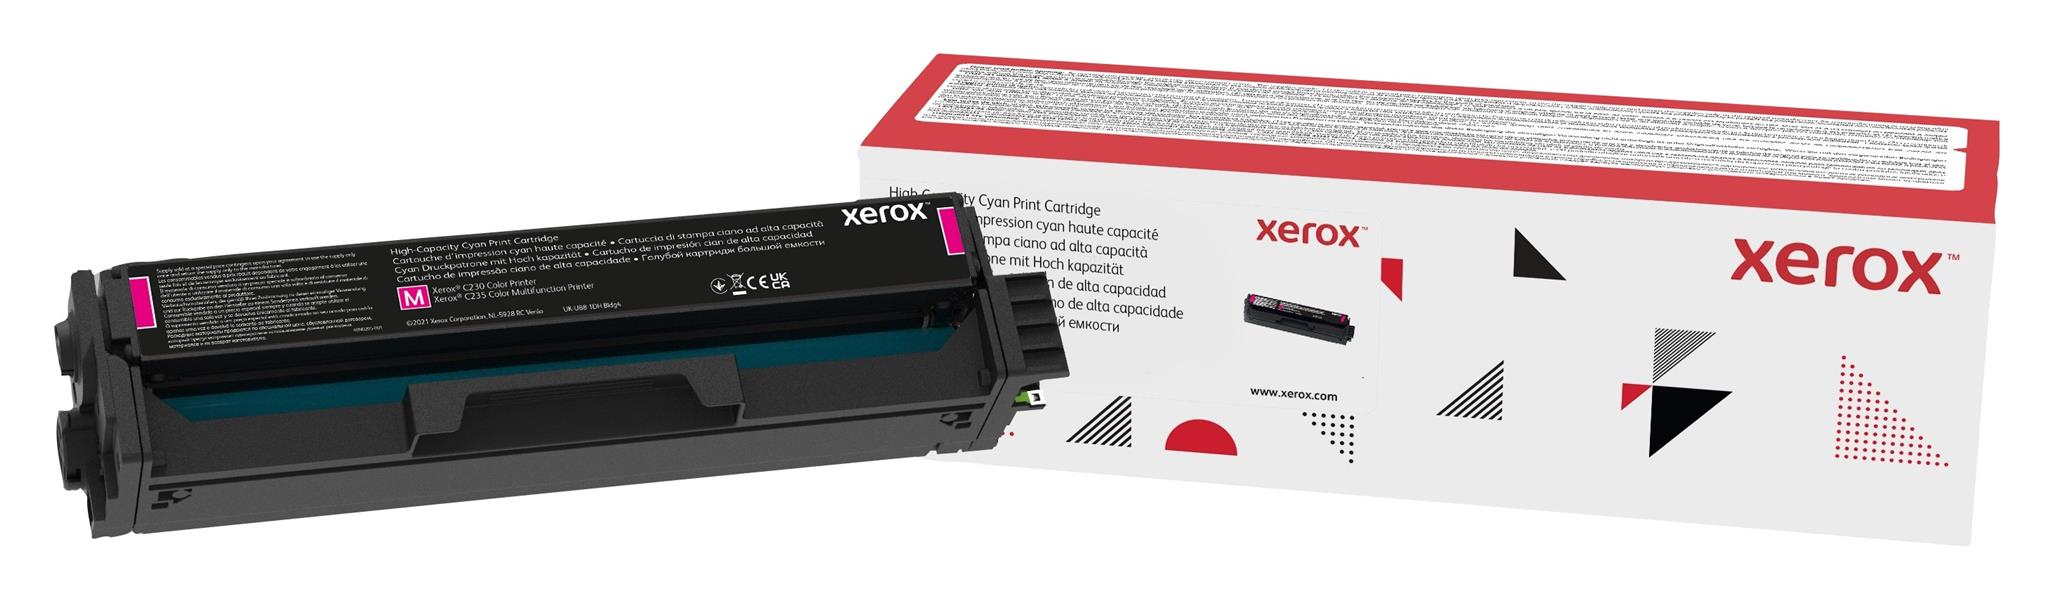 Xerox C230/C235 hoge capaciteit tonercassette, magenta (2.500 paginas)